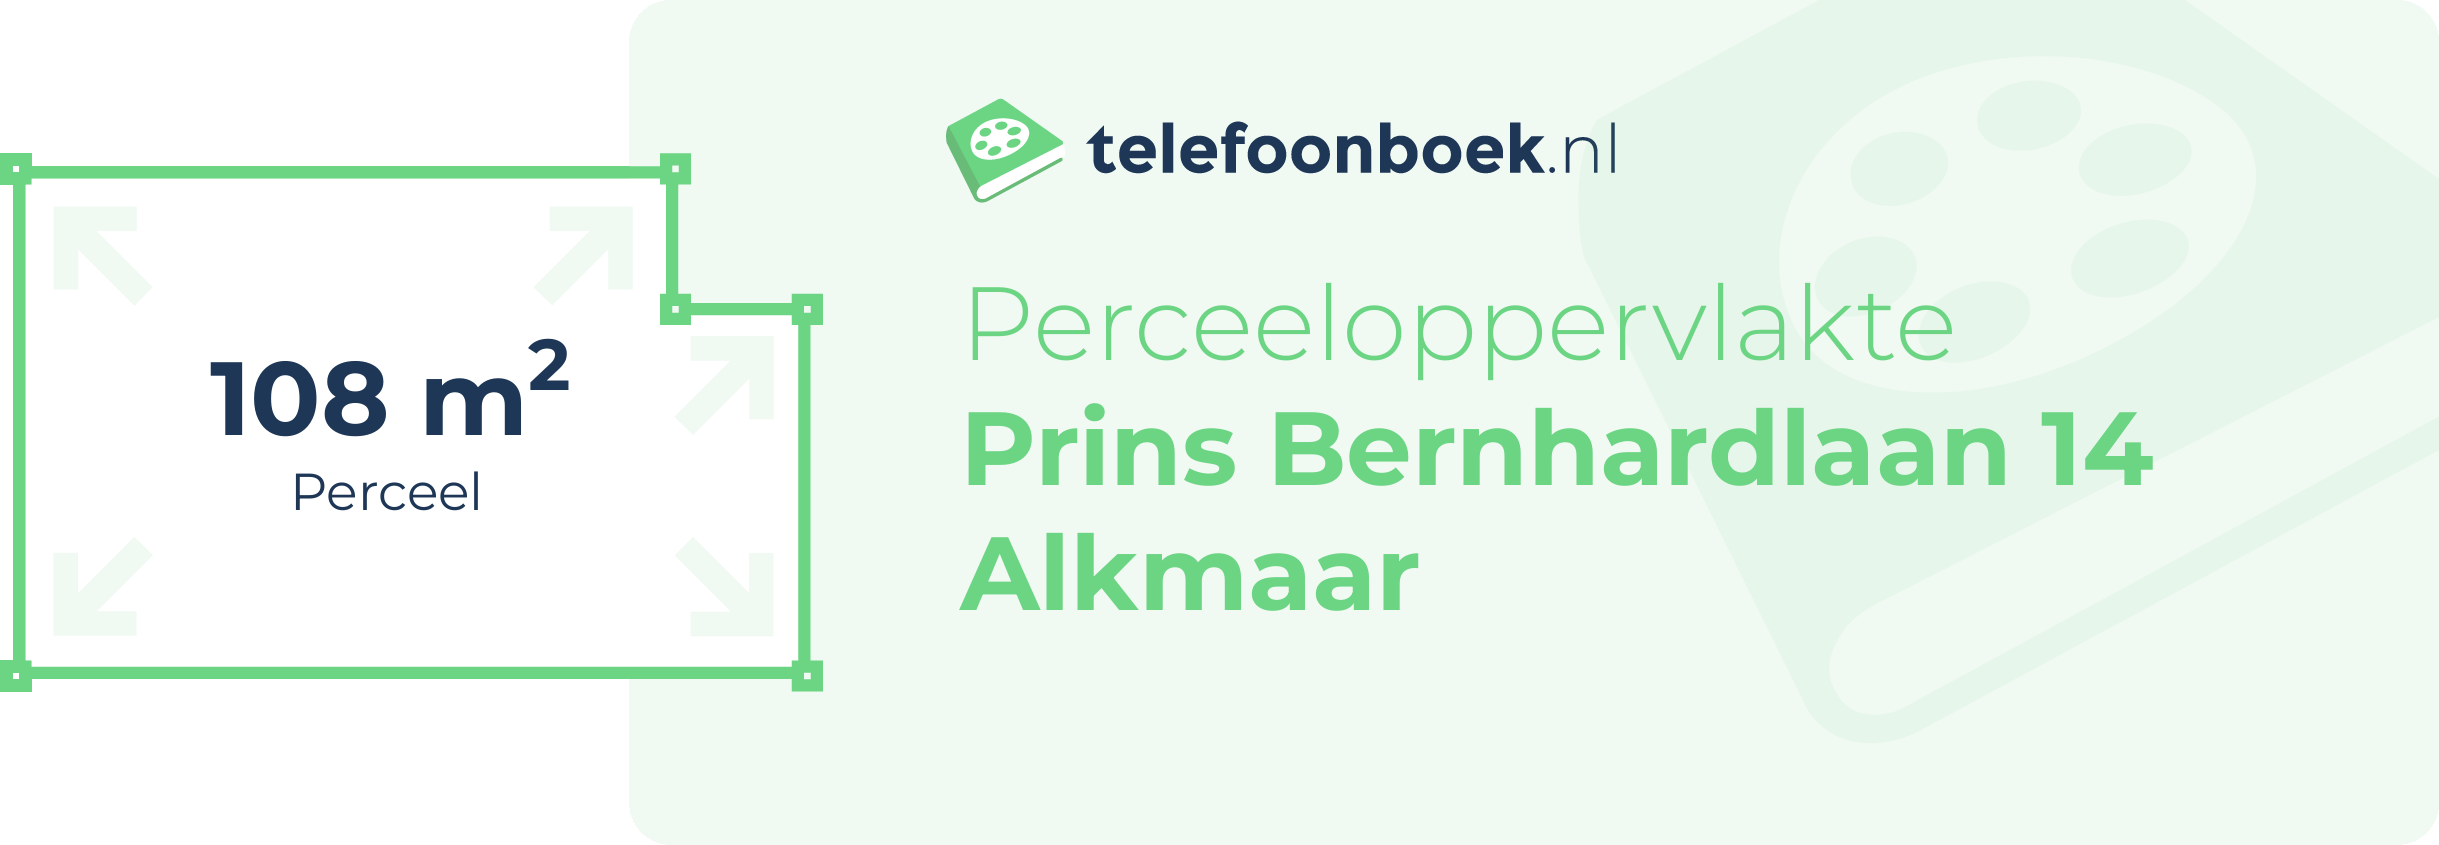 Perceeloppervlakte Prins Bernhardlaan 14 Alkmaar